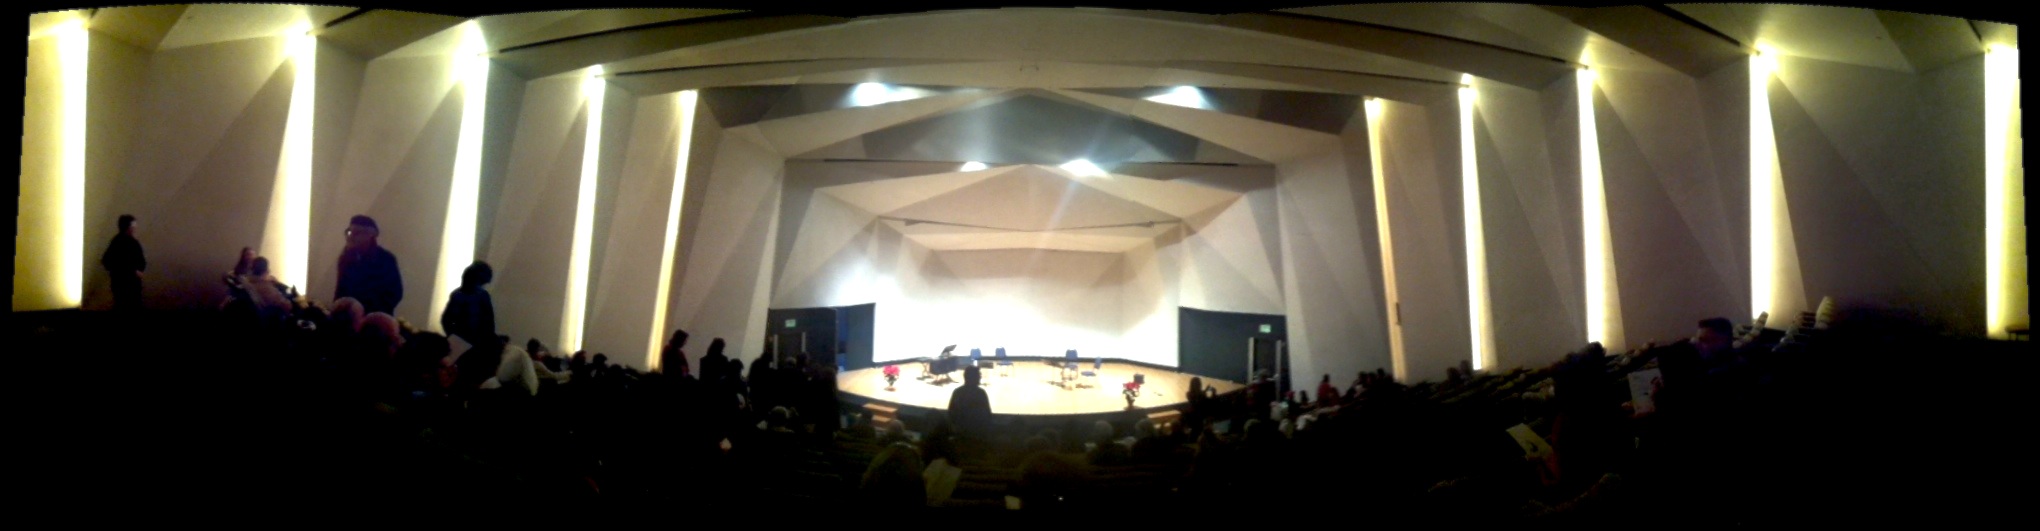 Inside the NSI auditorium